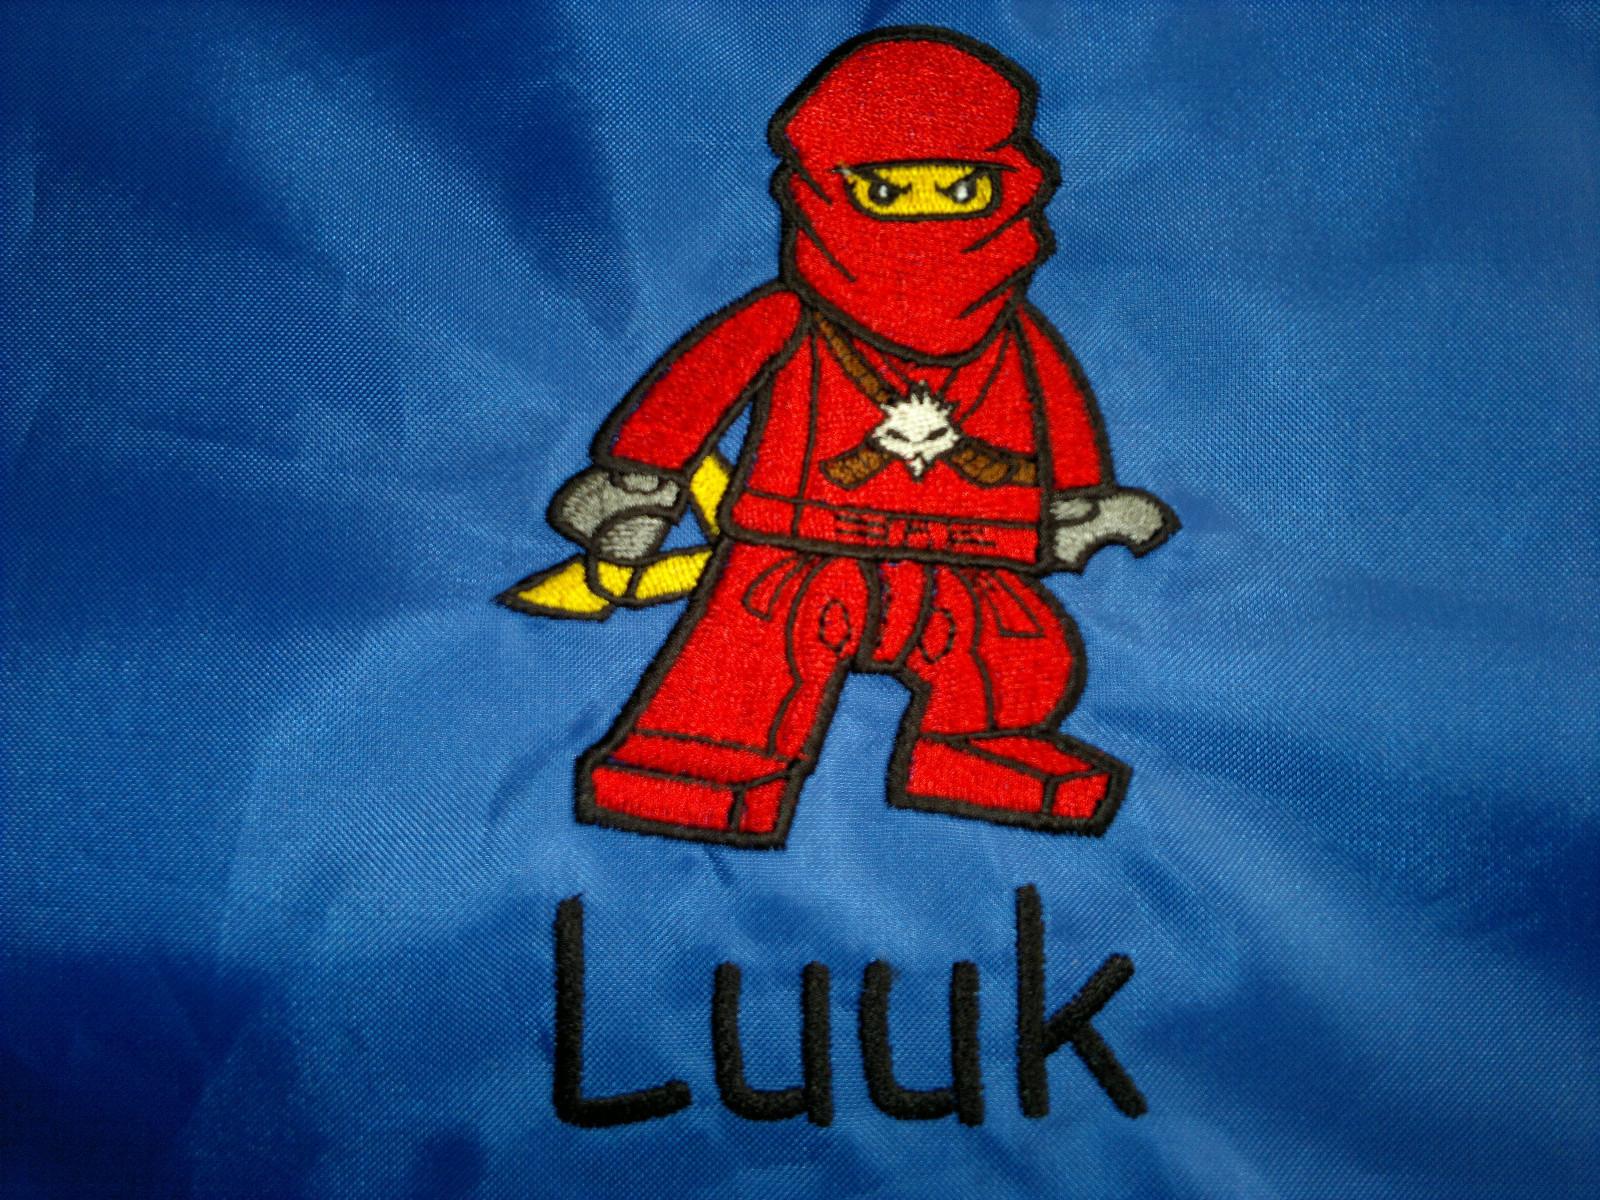 LEGO Ninjago Kai embroidery design